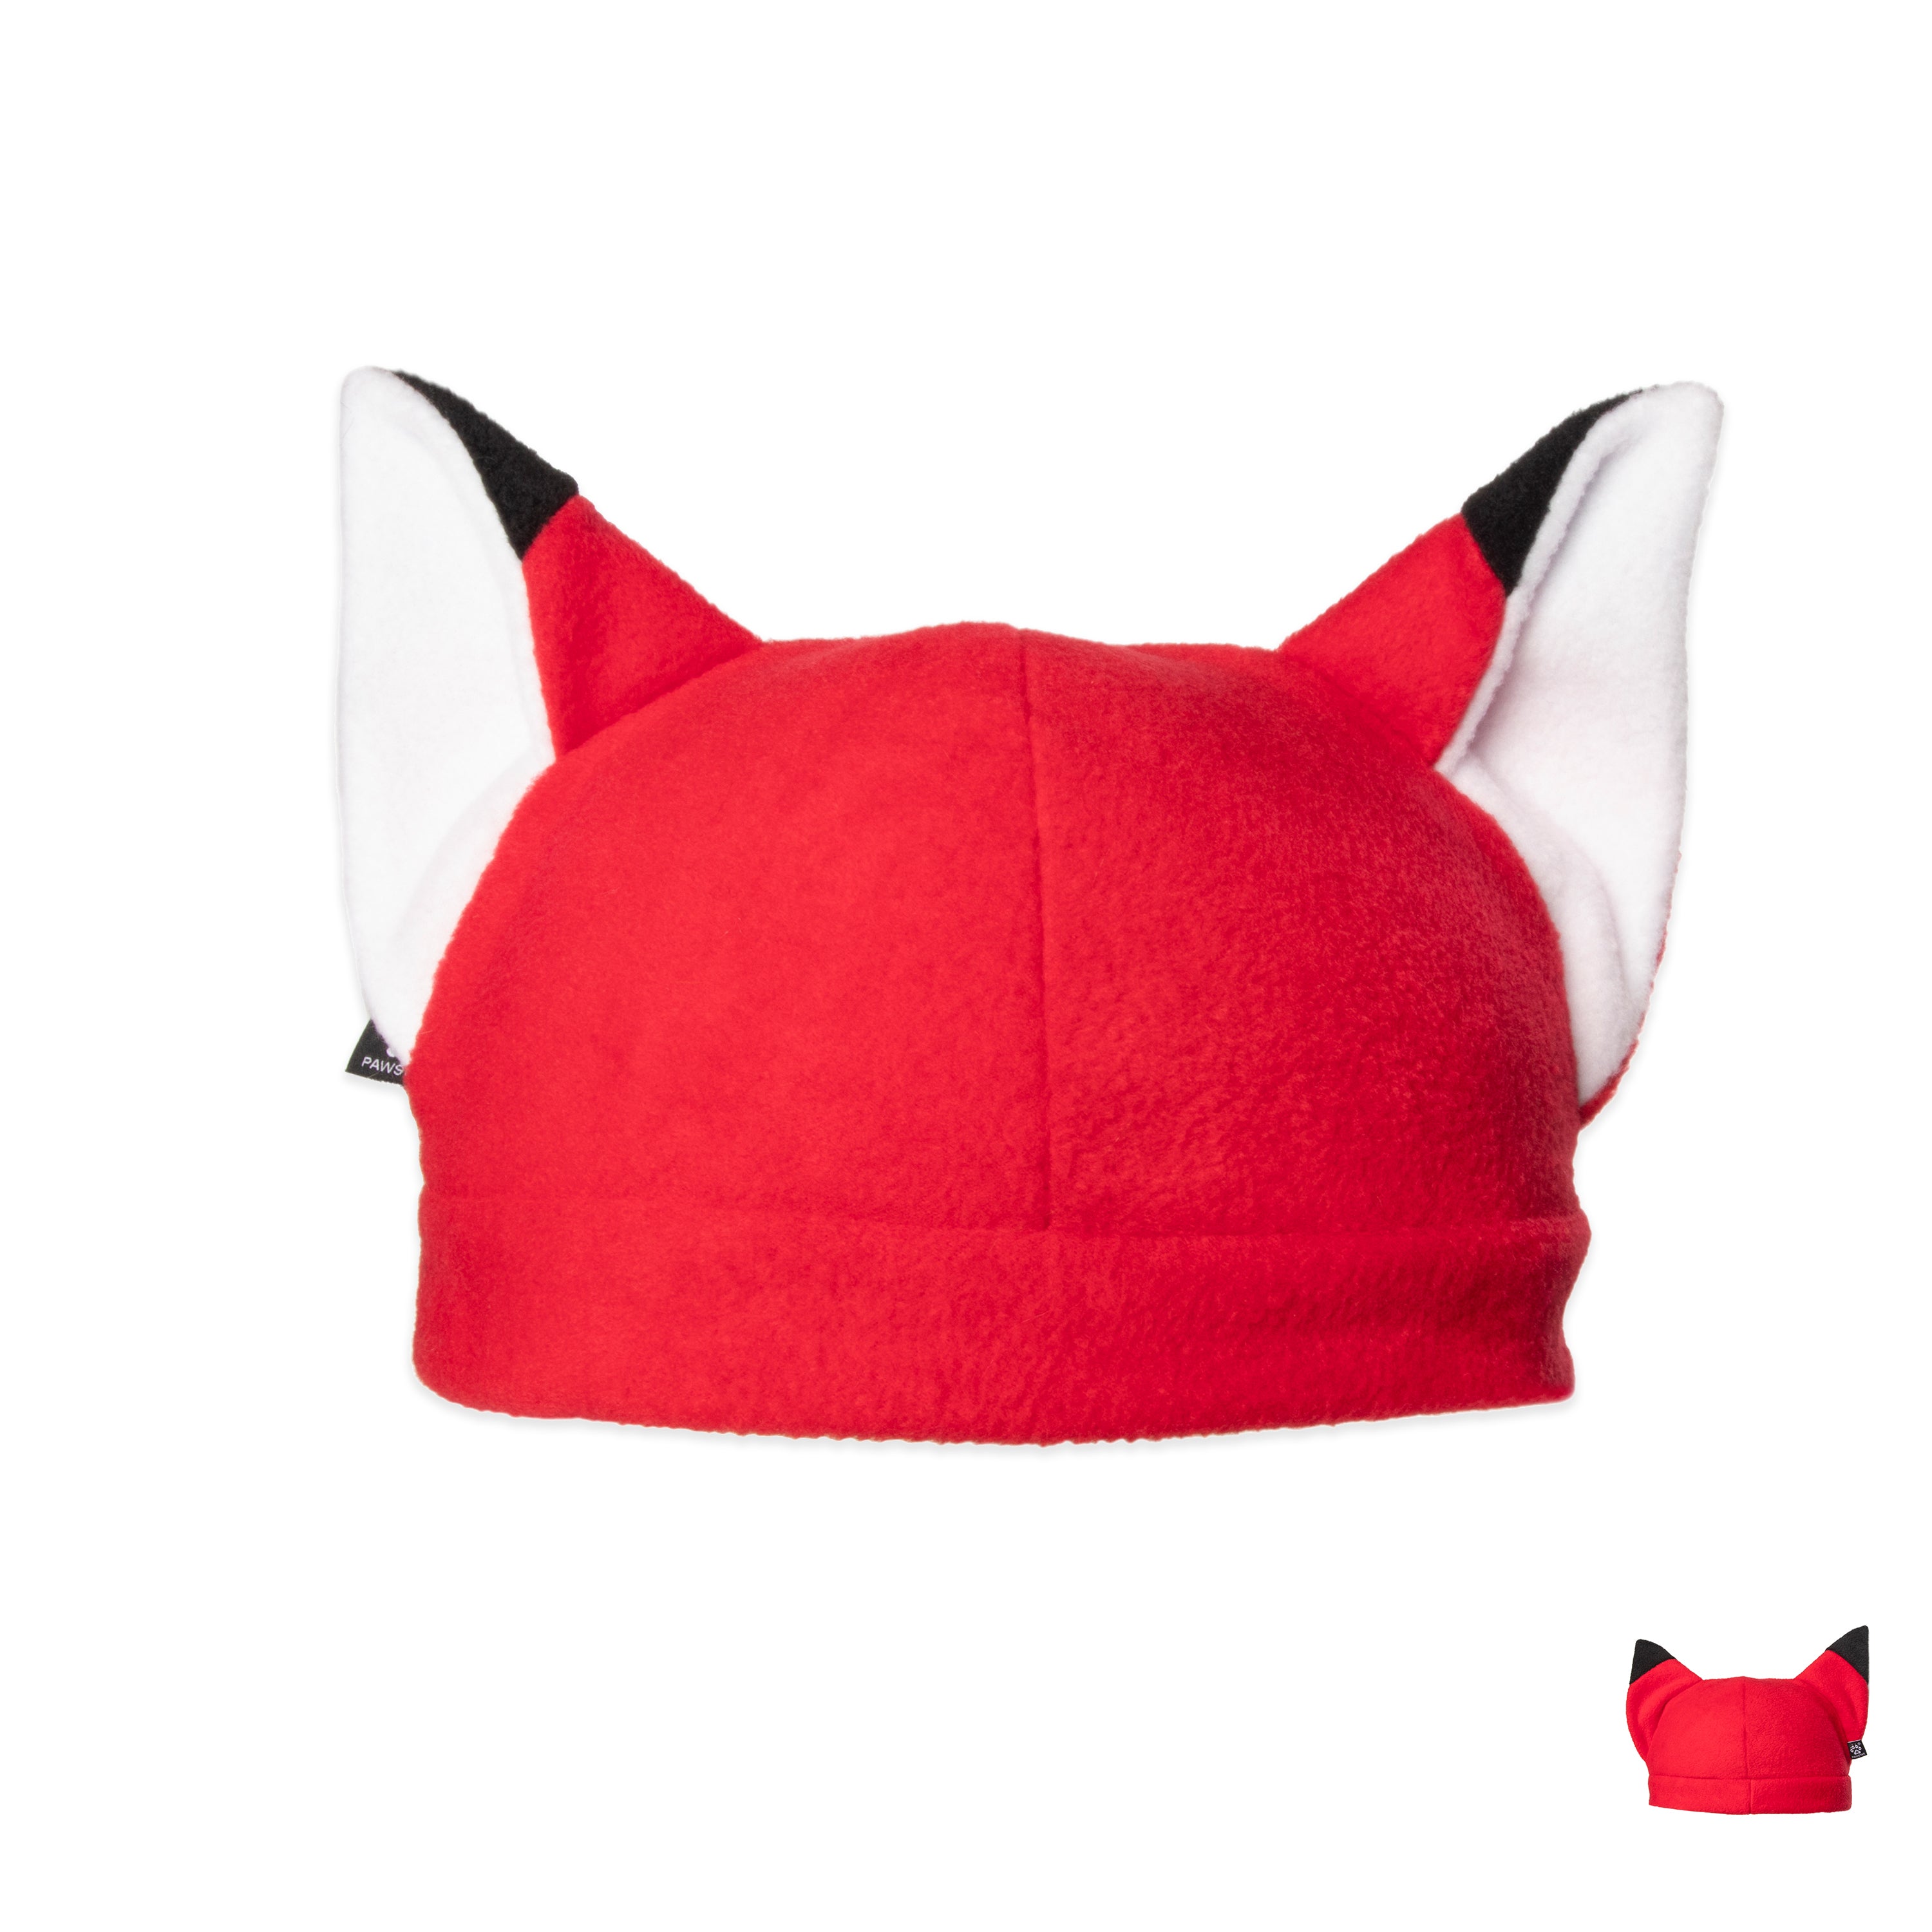 ☆ Color-Swap Fleece Fox Hat | Custom Partial Fursuit Commission 